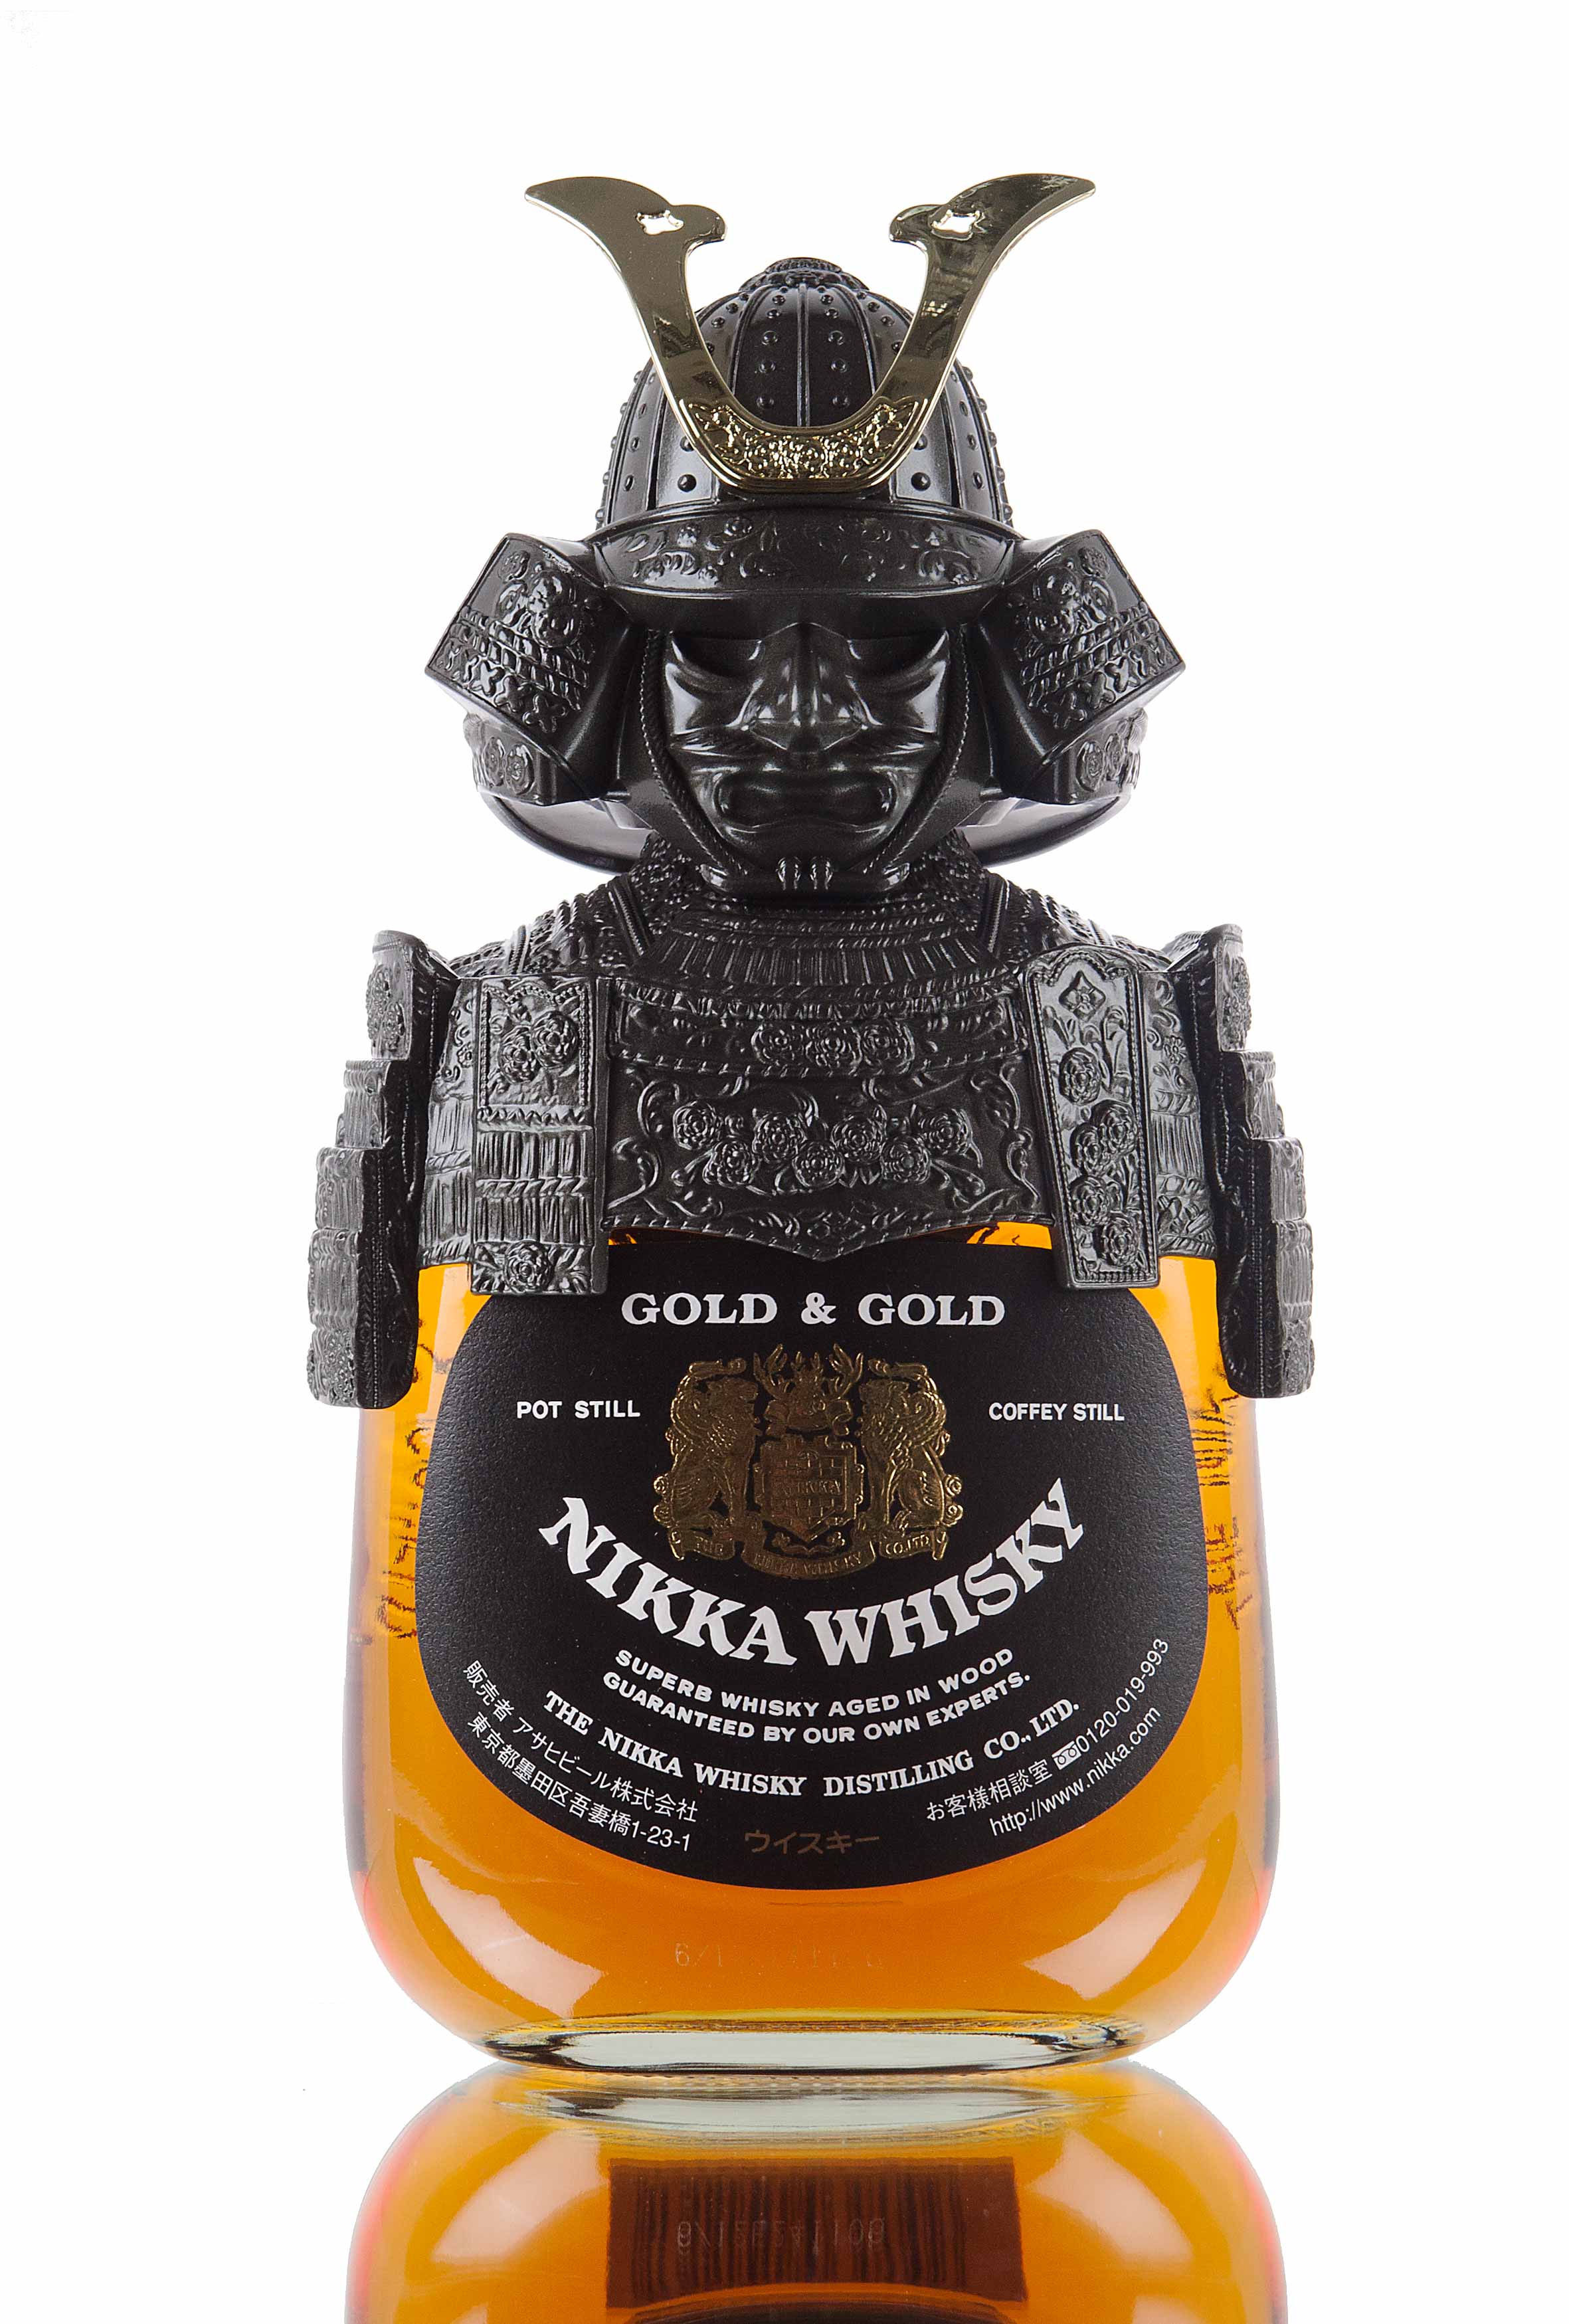 Nikka Gold & Gold Samurai / Japanese Blended Whisky